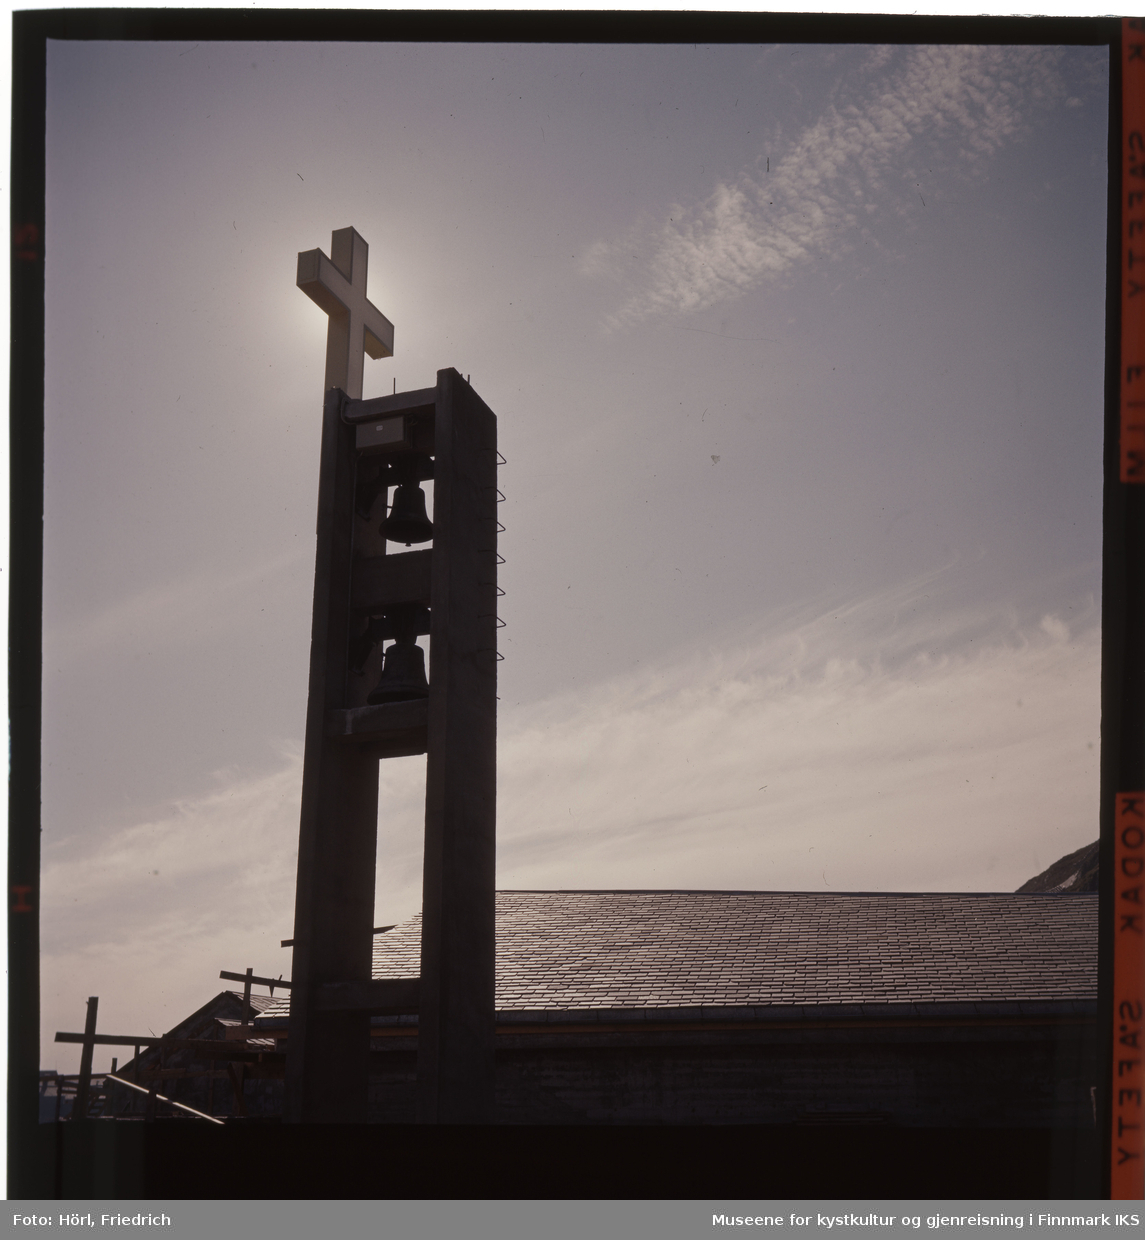 Kirketårnet til Den katolske kike St. Mikael i Hammerfest med kors og klokkene er fotografert i motlyset. Tydelig ser man kirketaket som er tekket med rektangulært takskifer. Til venstre for bygget står det fortsatt noe stilas.